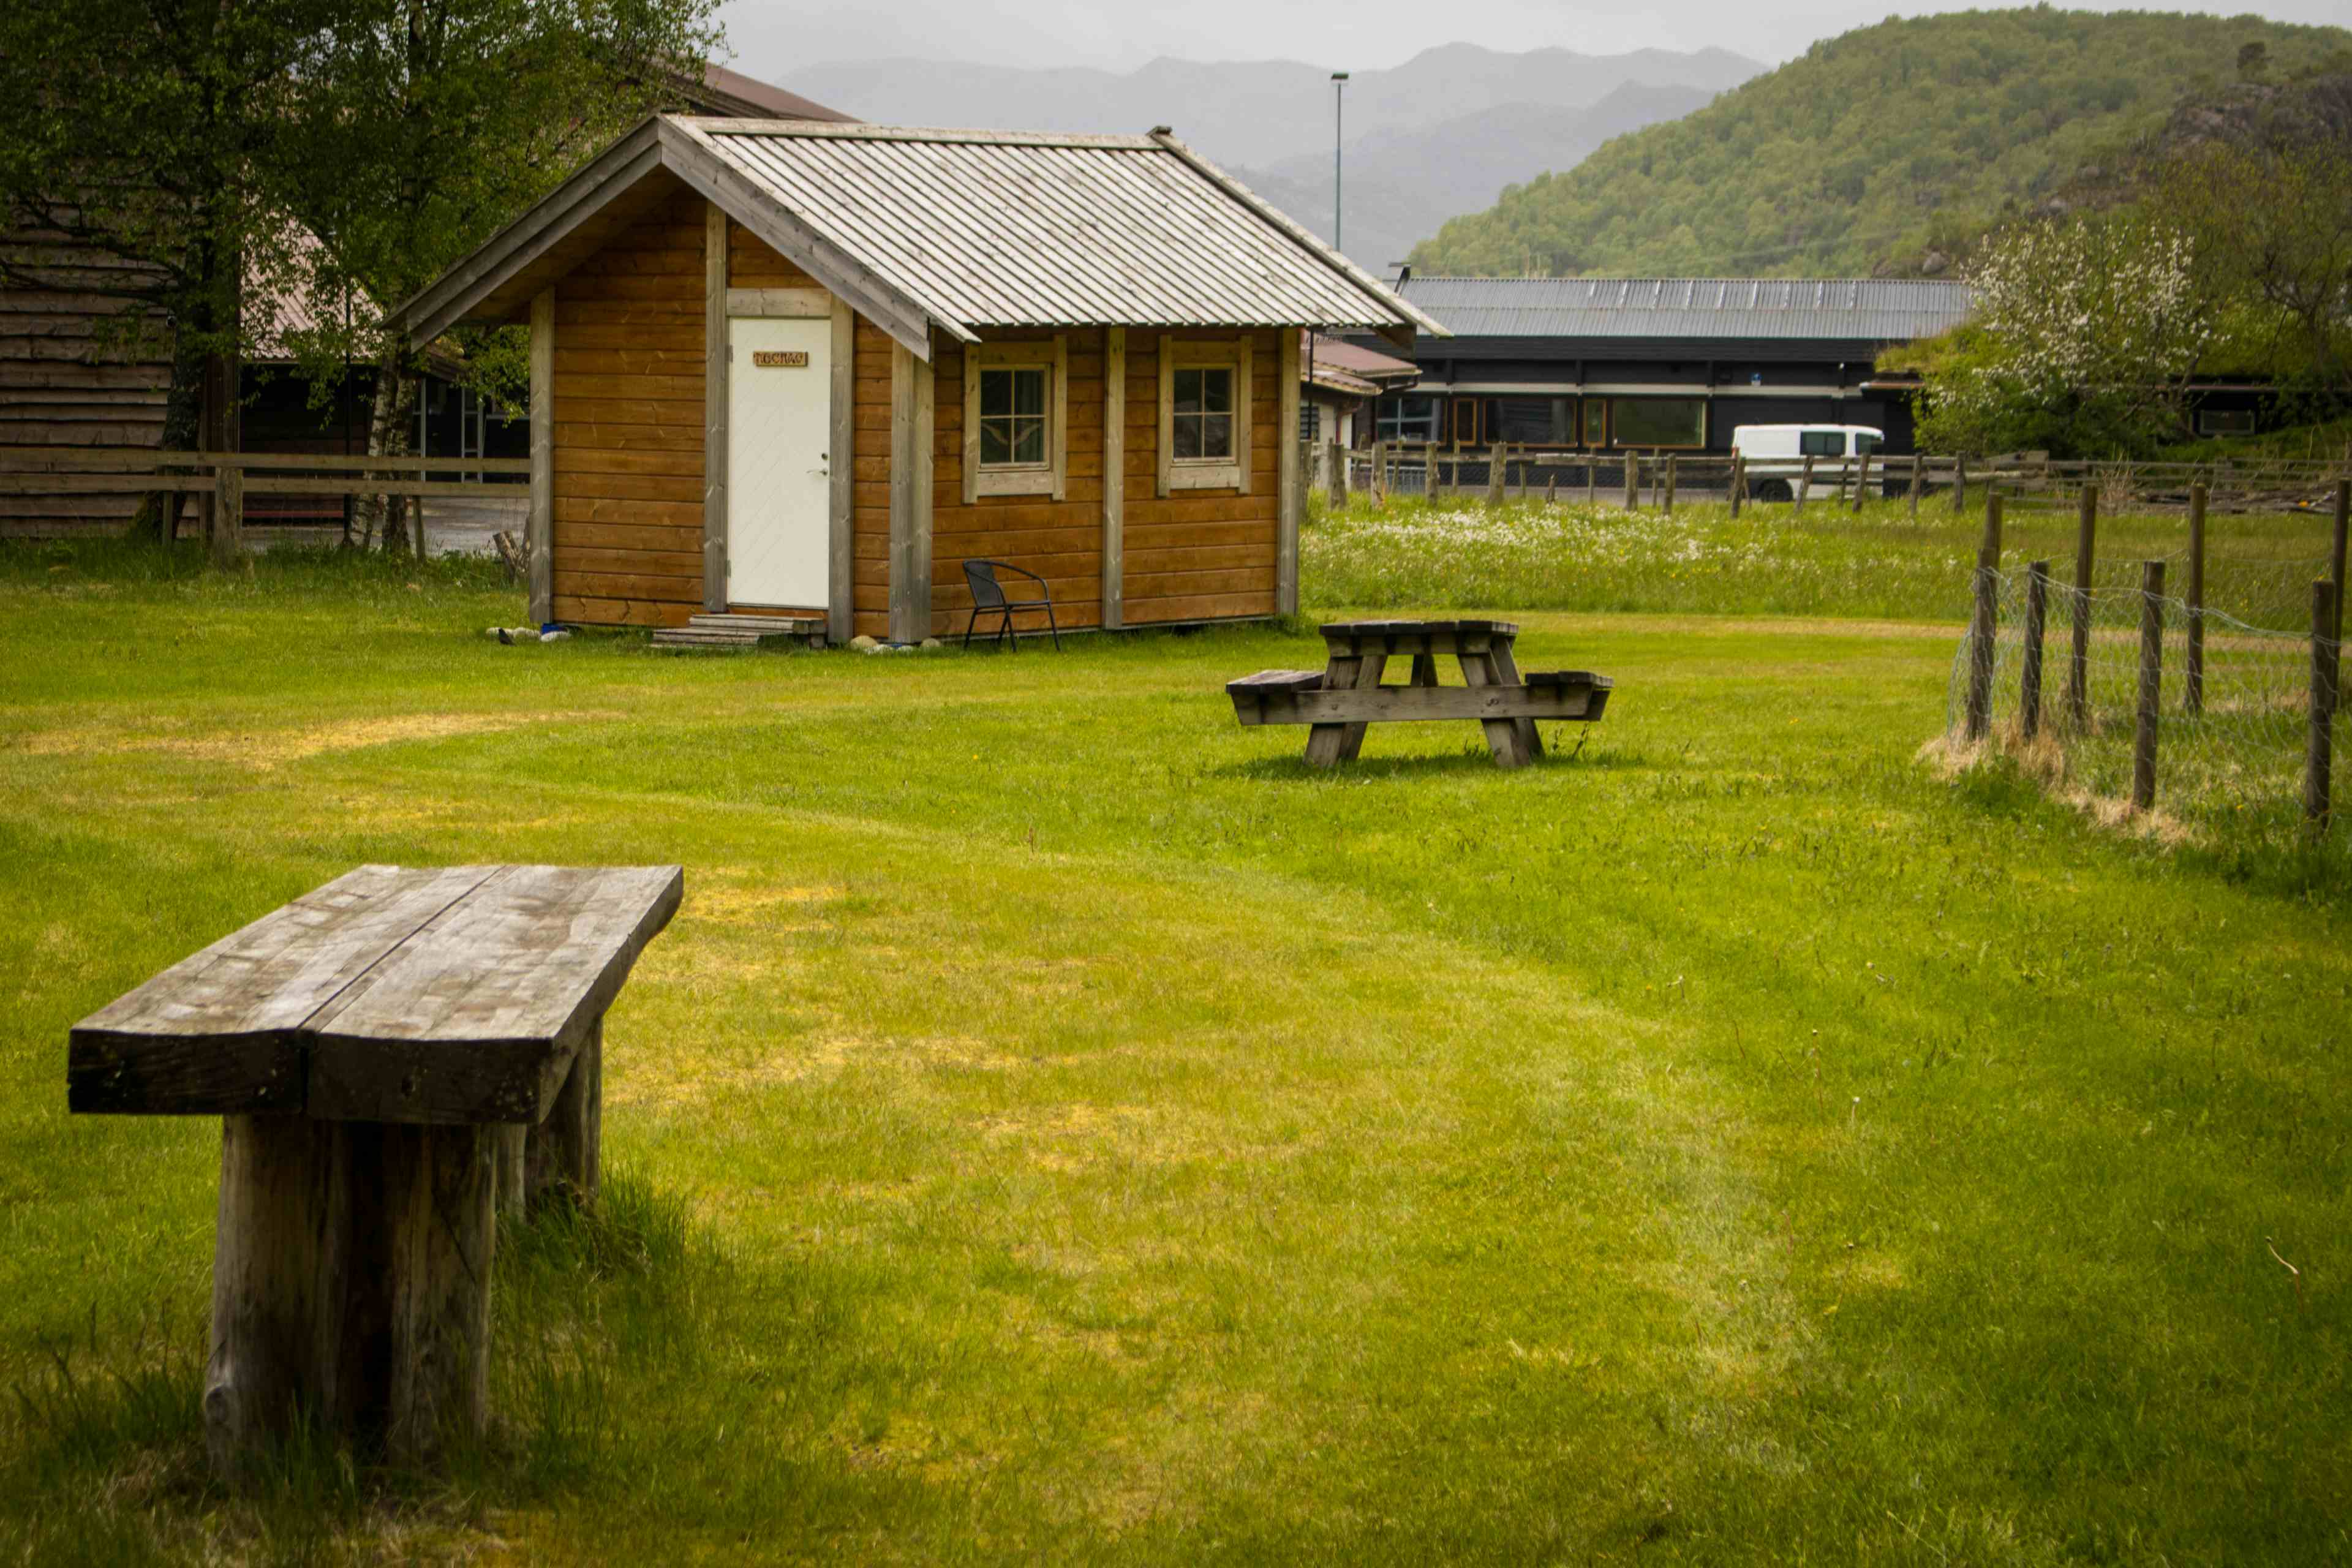 To hytter og sanitæranlegget i bakgrunnen og et grønt område med benker og bord i forgrunnen.